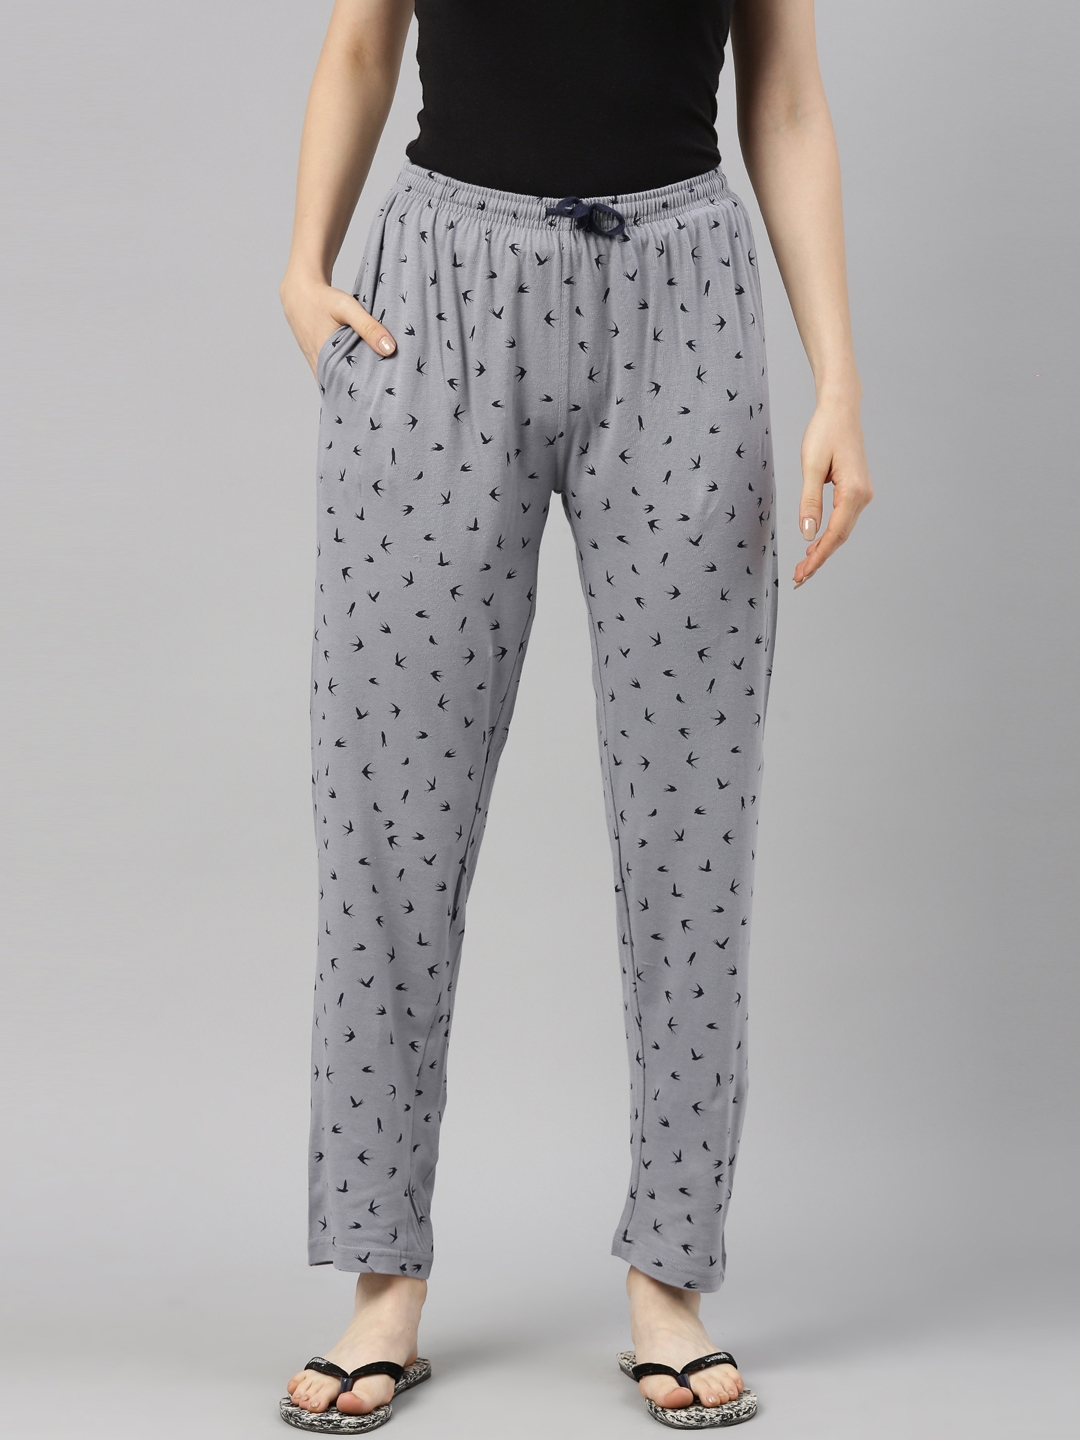 Buy CYZ Mens 100 Cotton Jersey Knit Pajama PantsLounge PantsGreymelangeS  at Amazonin